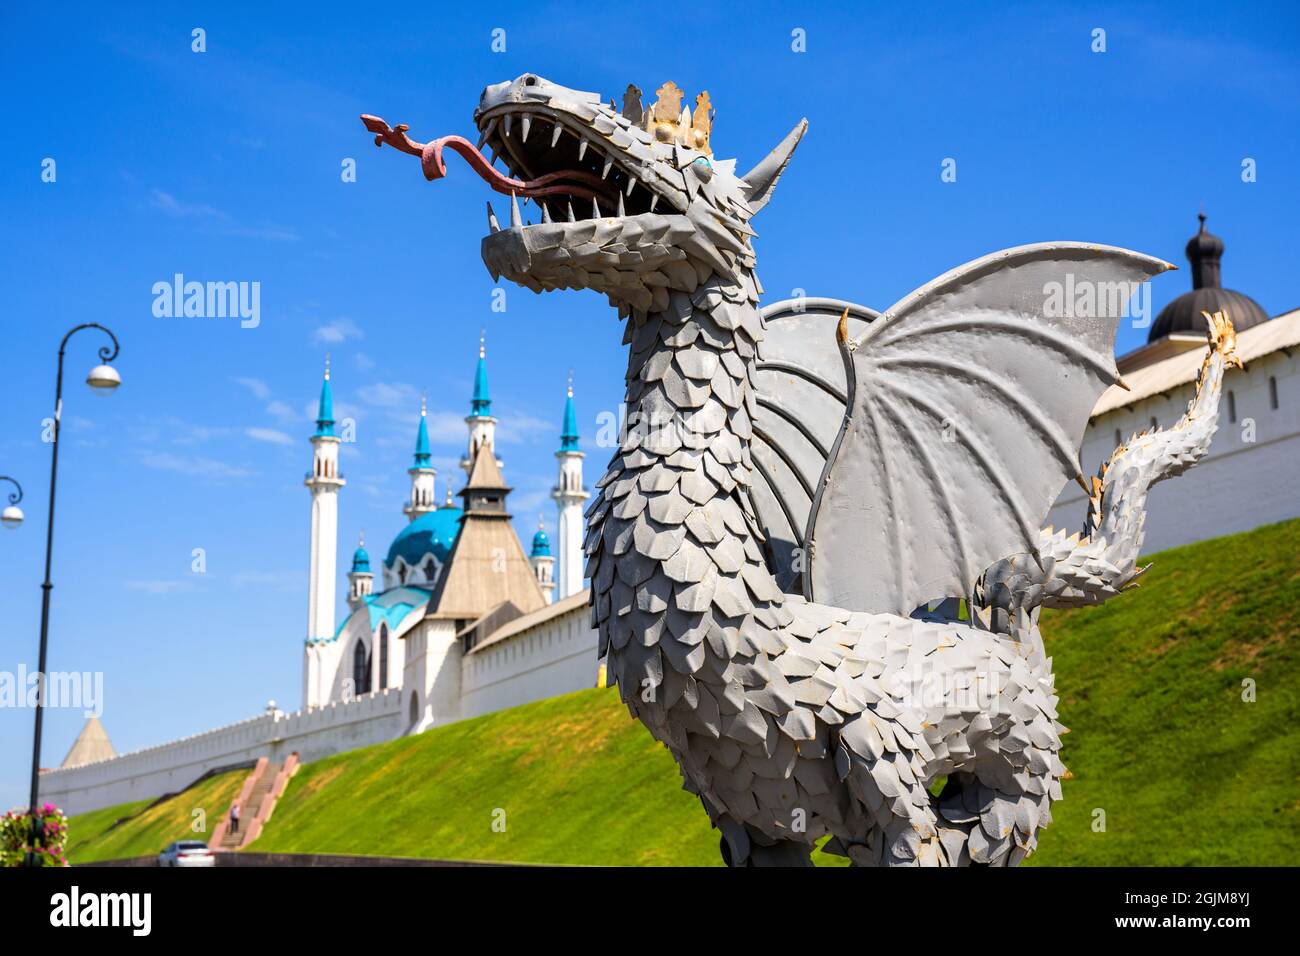 Le Kremlin de Kazan en été, Tatarstan, Russie. C'est l'attraction touristique de Kazan et le site du patrimoine mondial de l'UNESCO. Blanc Banque D'Images